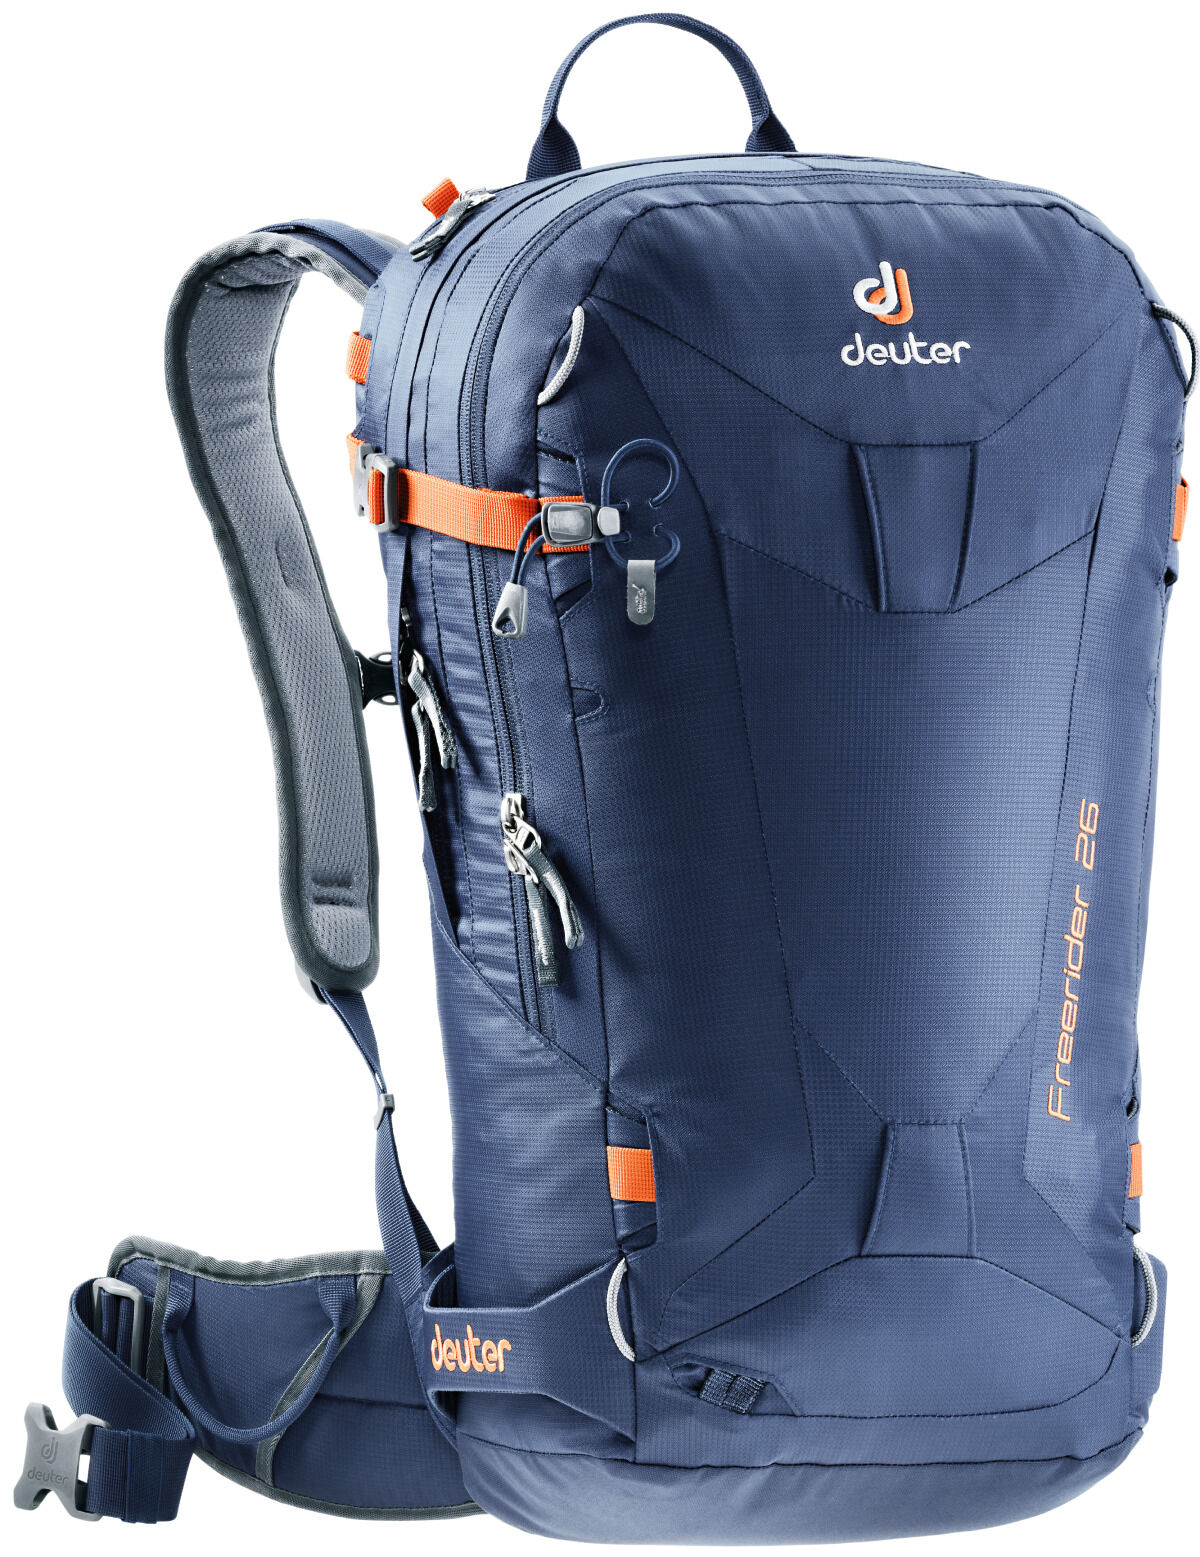 Deuter - Freerider 26 - Ski Touring backpack